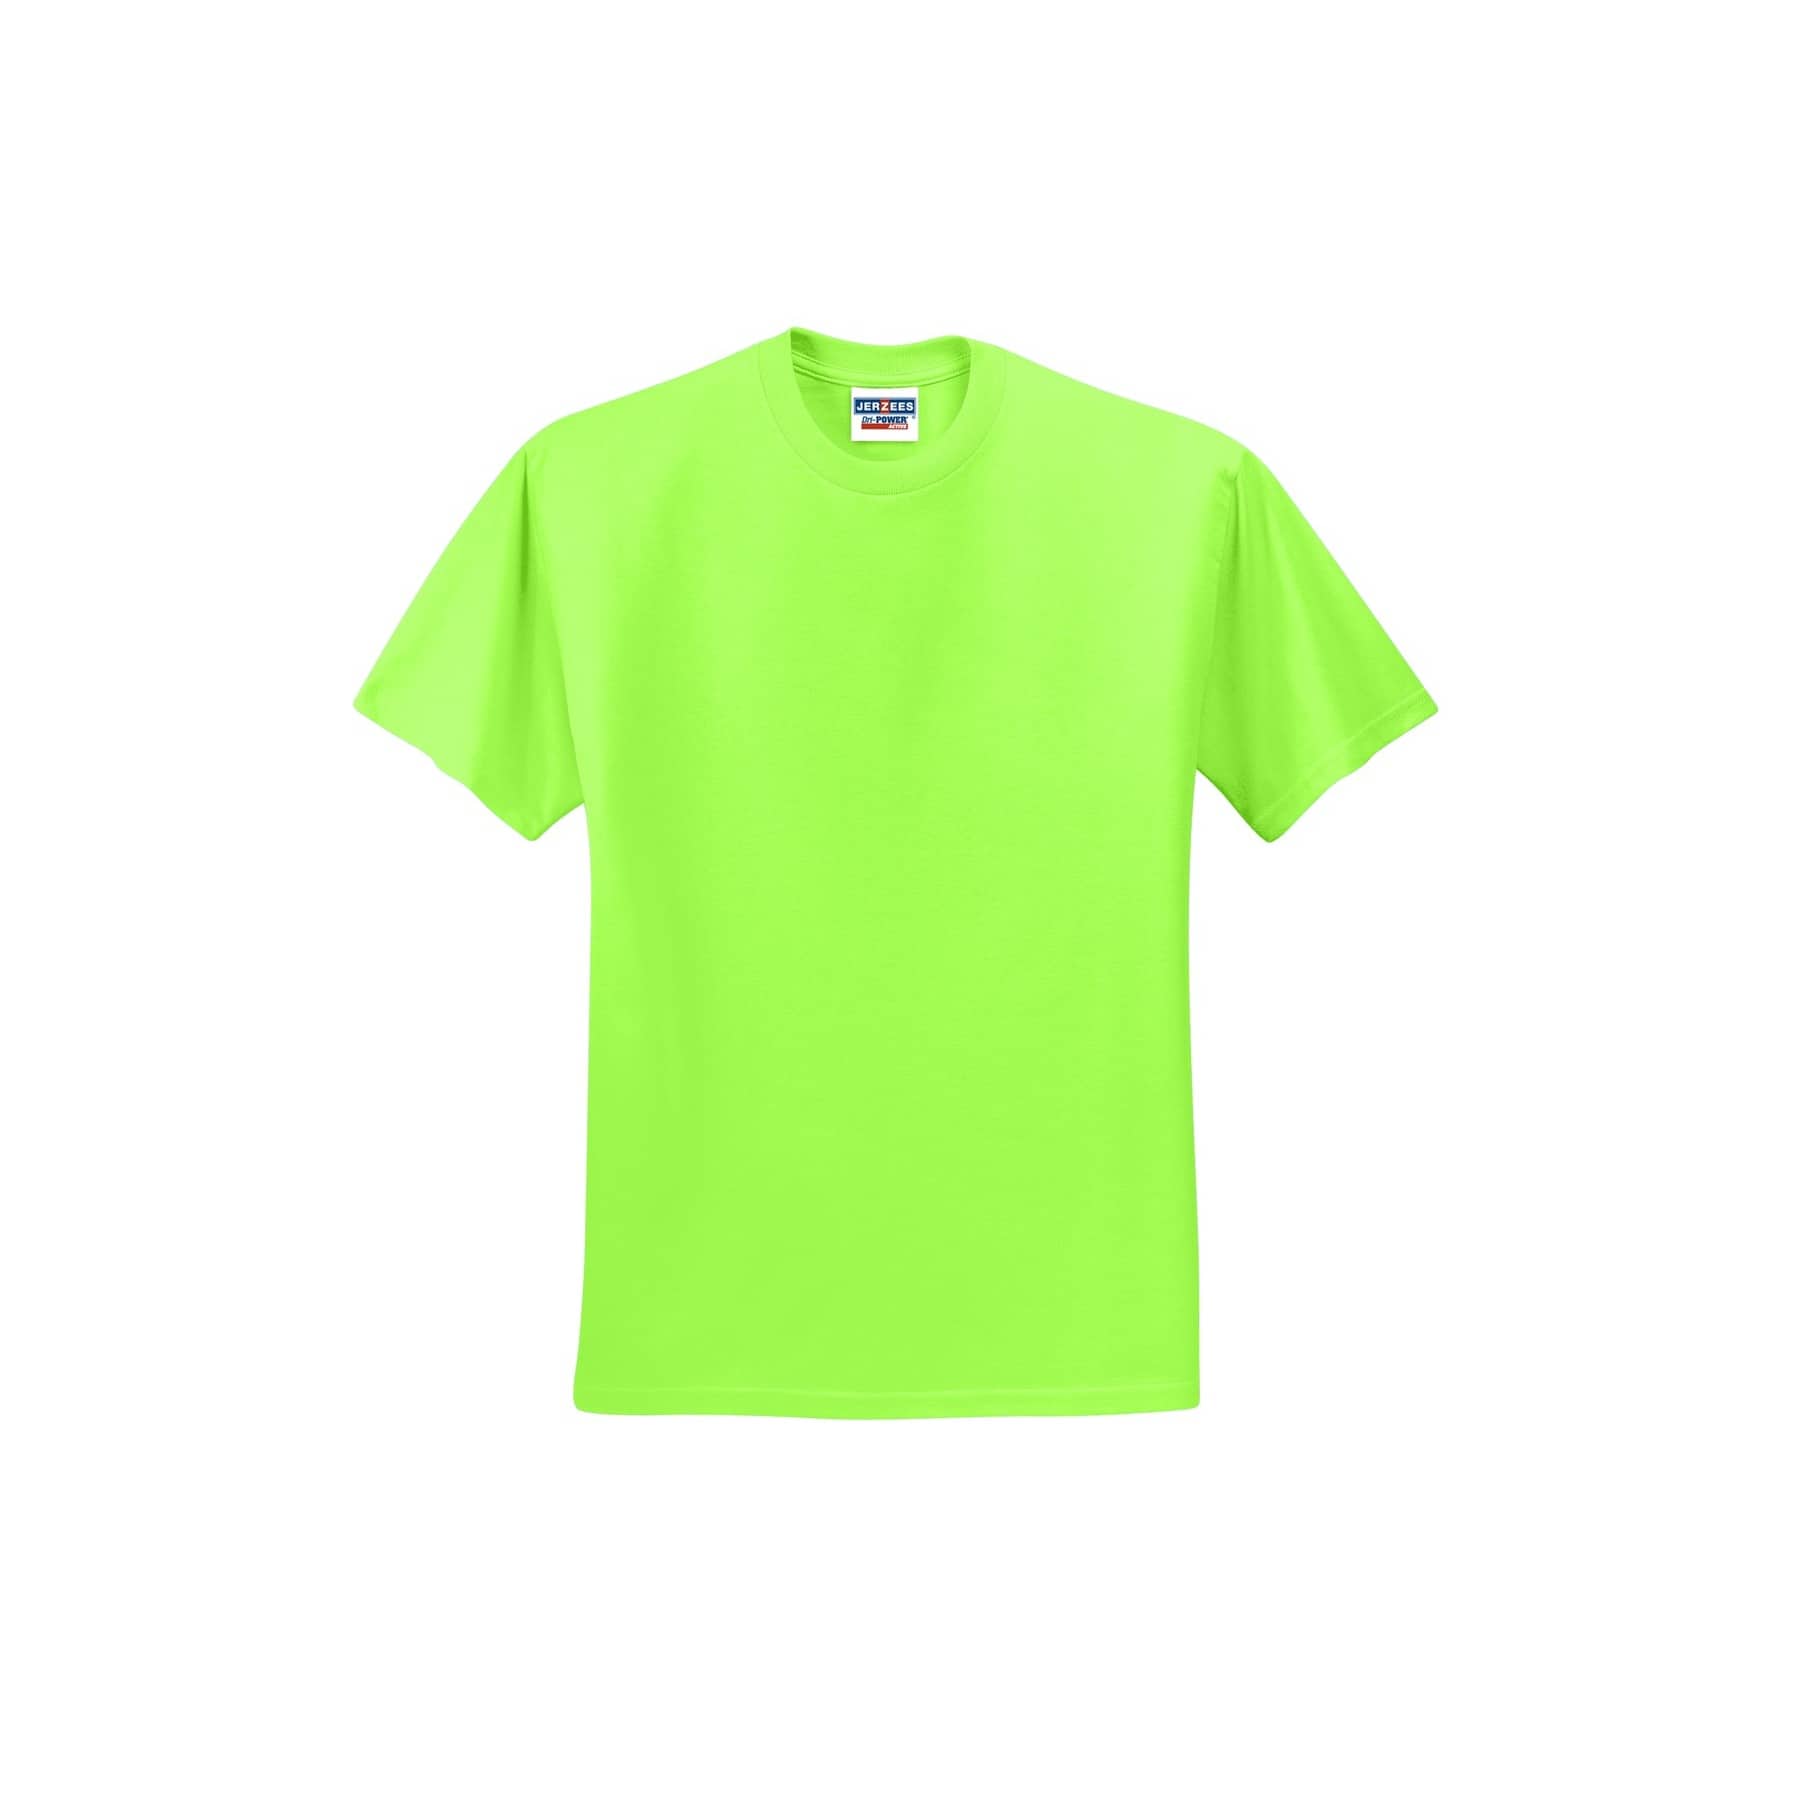 light green t shirt template